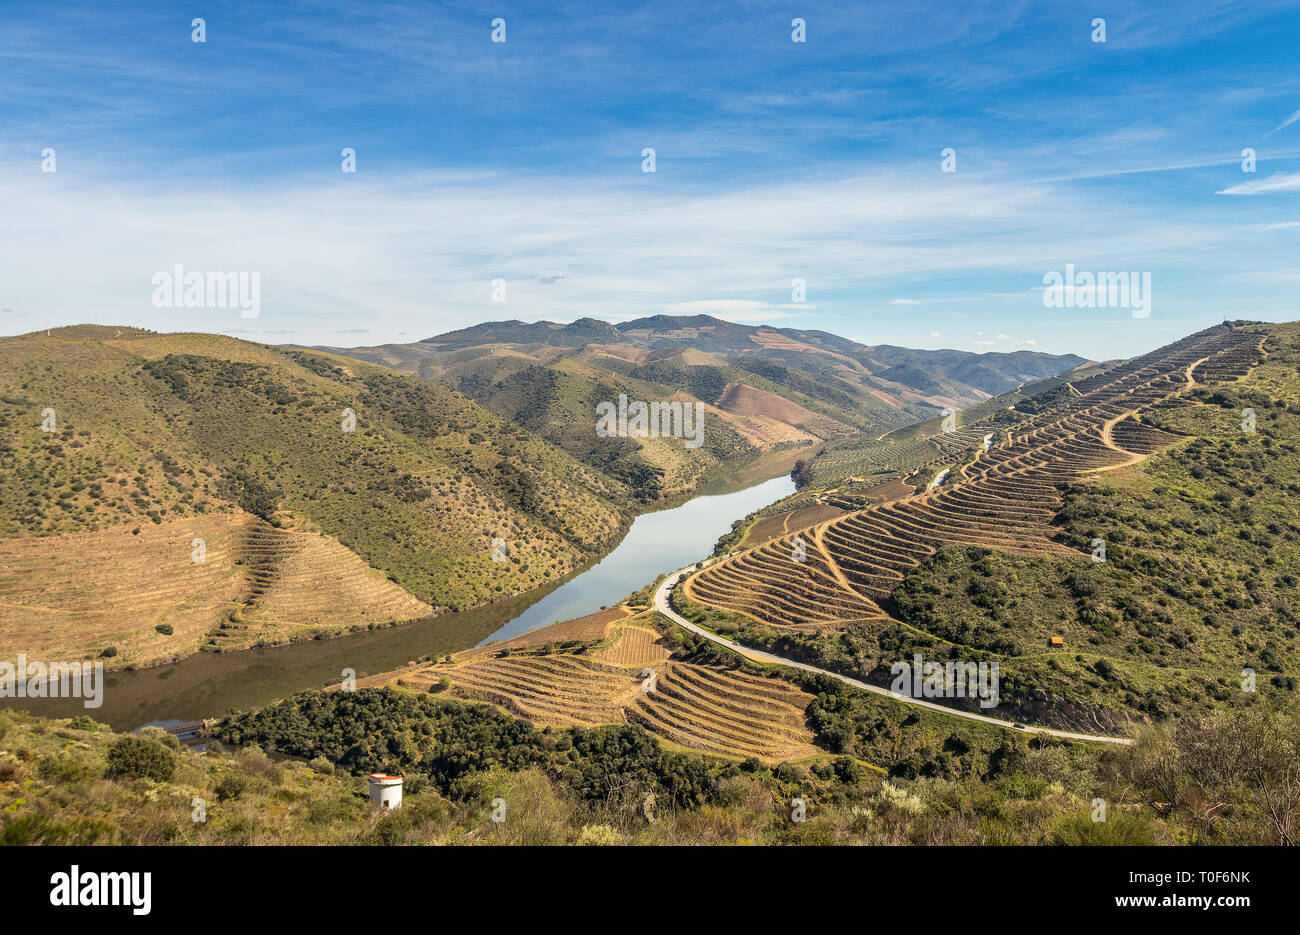 Il paesaggio del fiume Douro serpeggianti attraverso le montagne, con le terrazze del vino di Porto vigneti, nei pressi della foce del fiume COA. Foto Stock